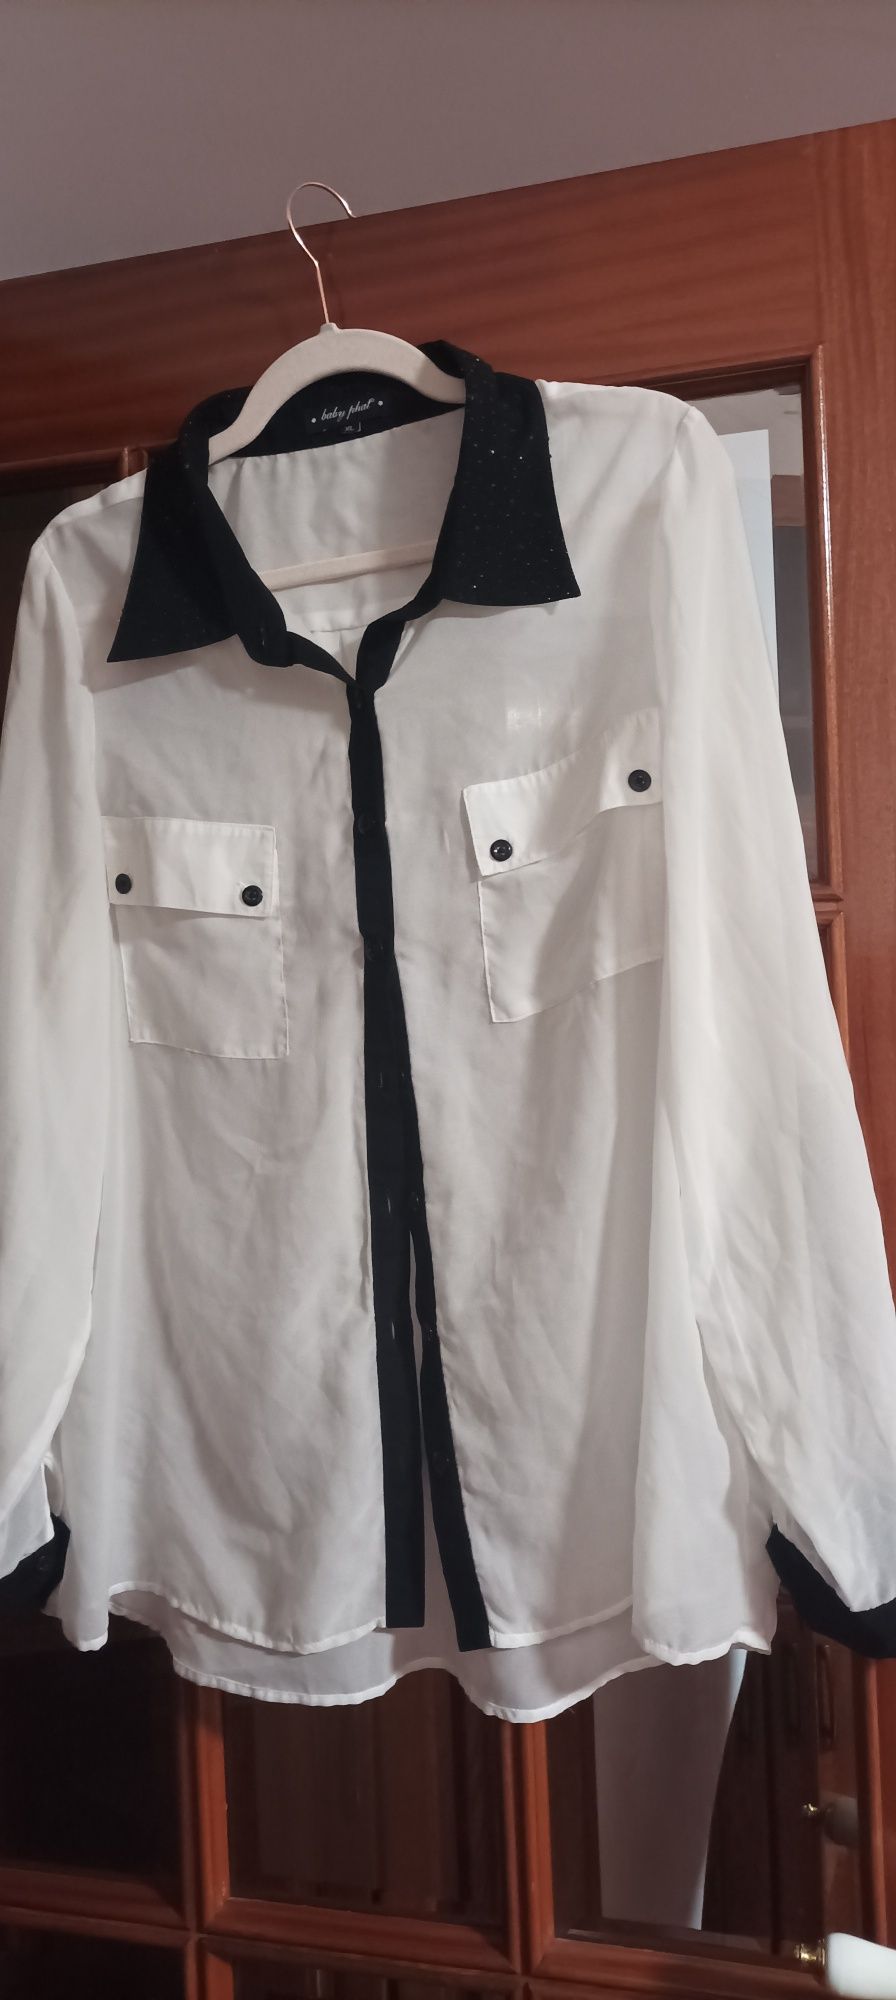 Camisa com faixa preta e o resto branco e brilhante no colarinho